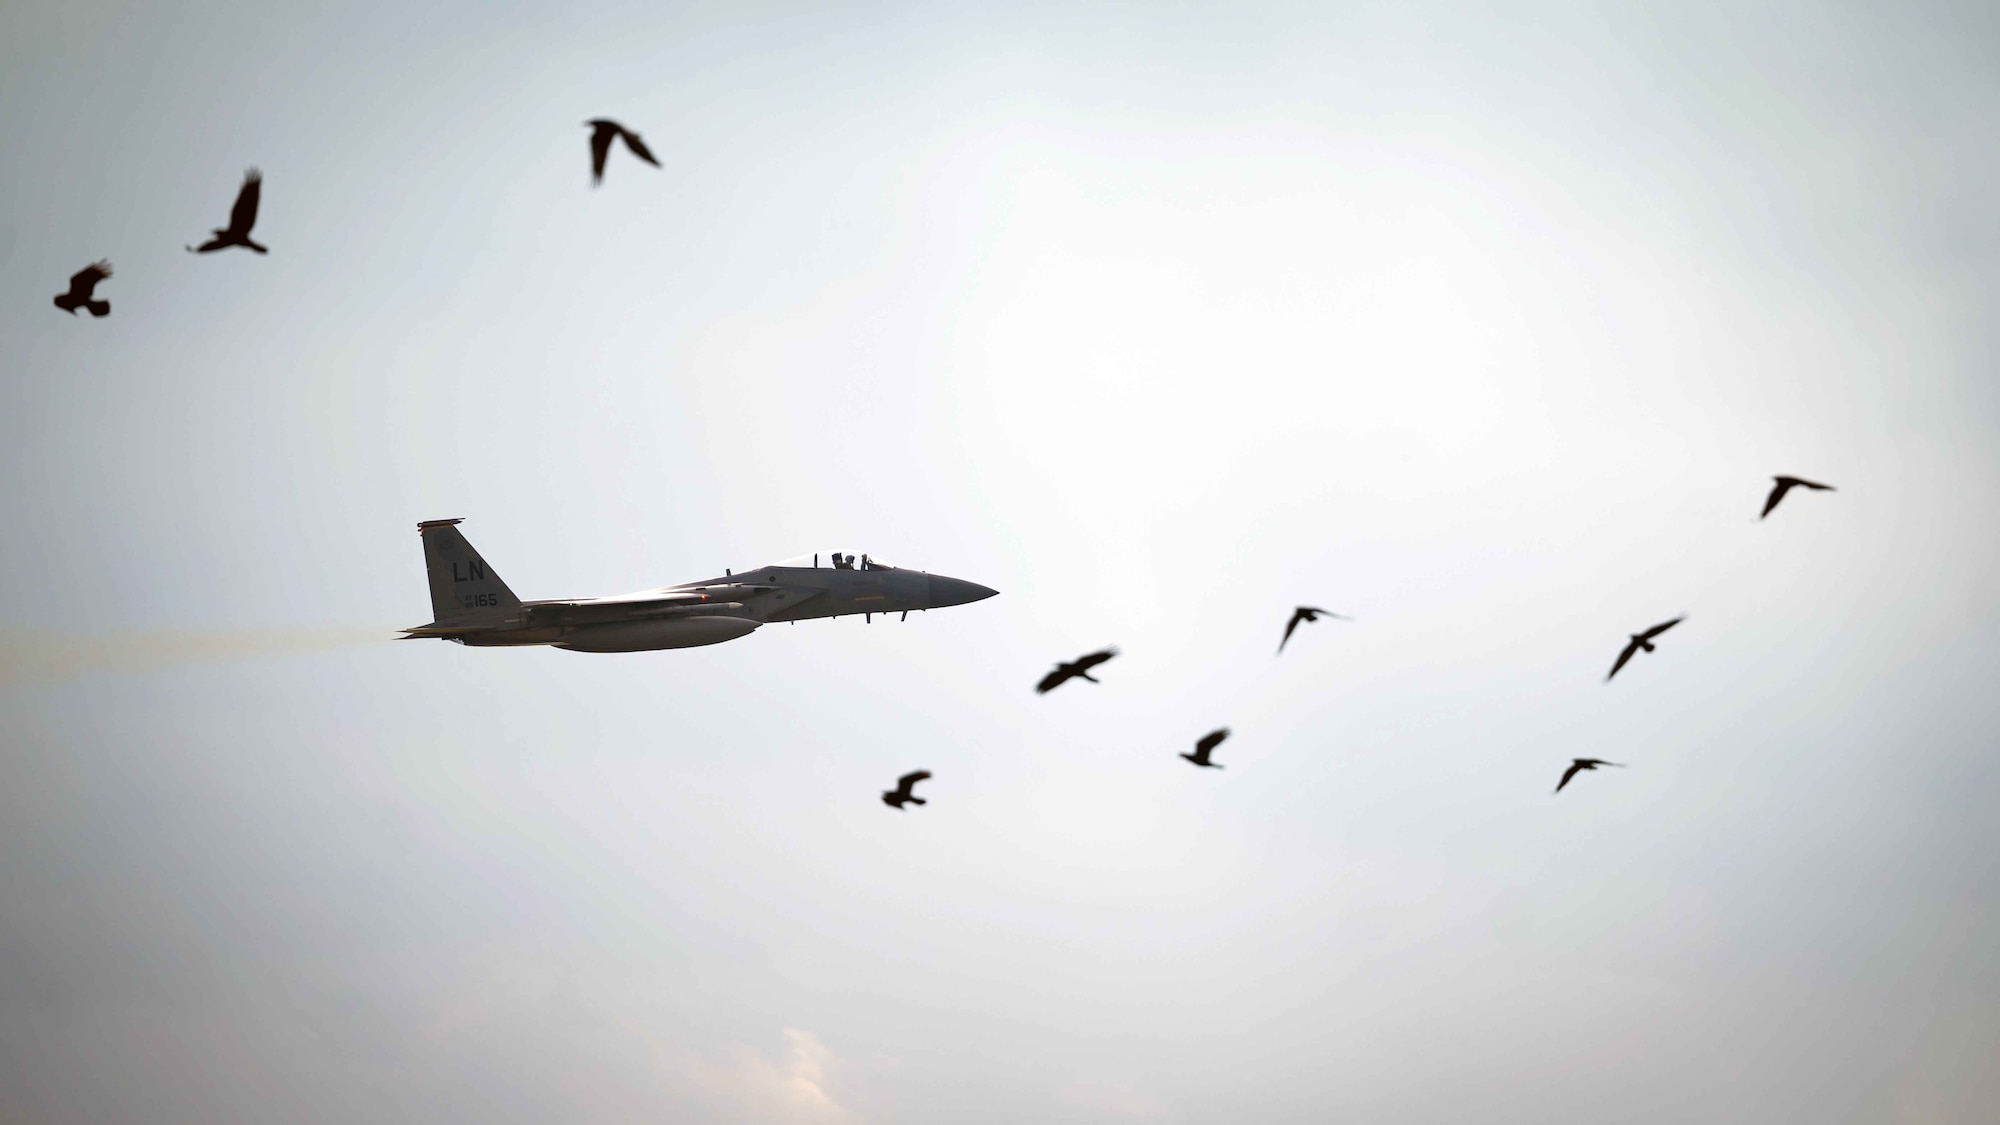 A F-15 flies among birds.